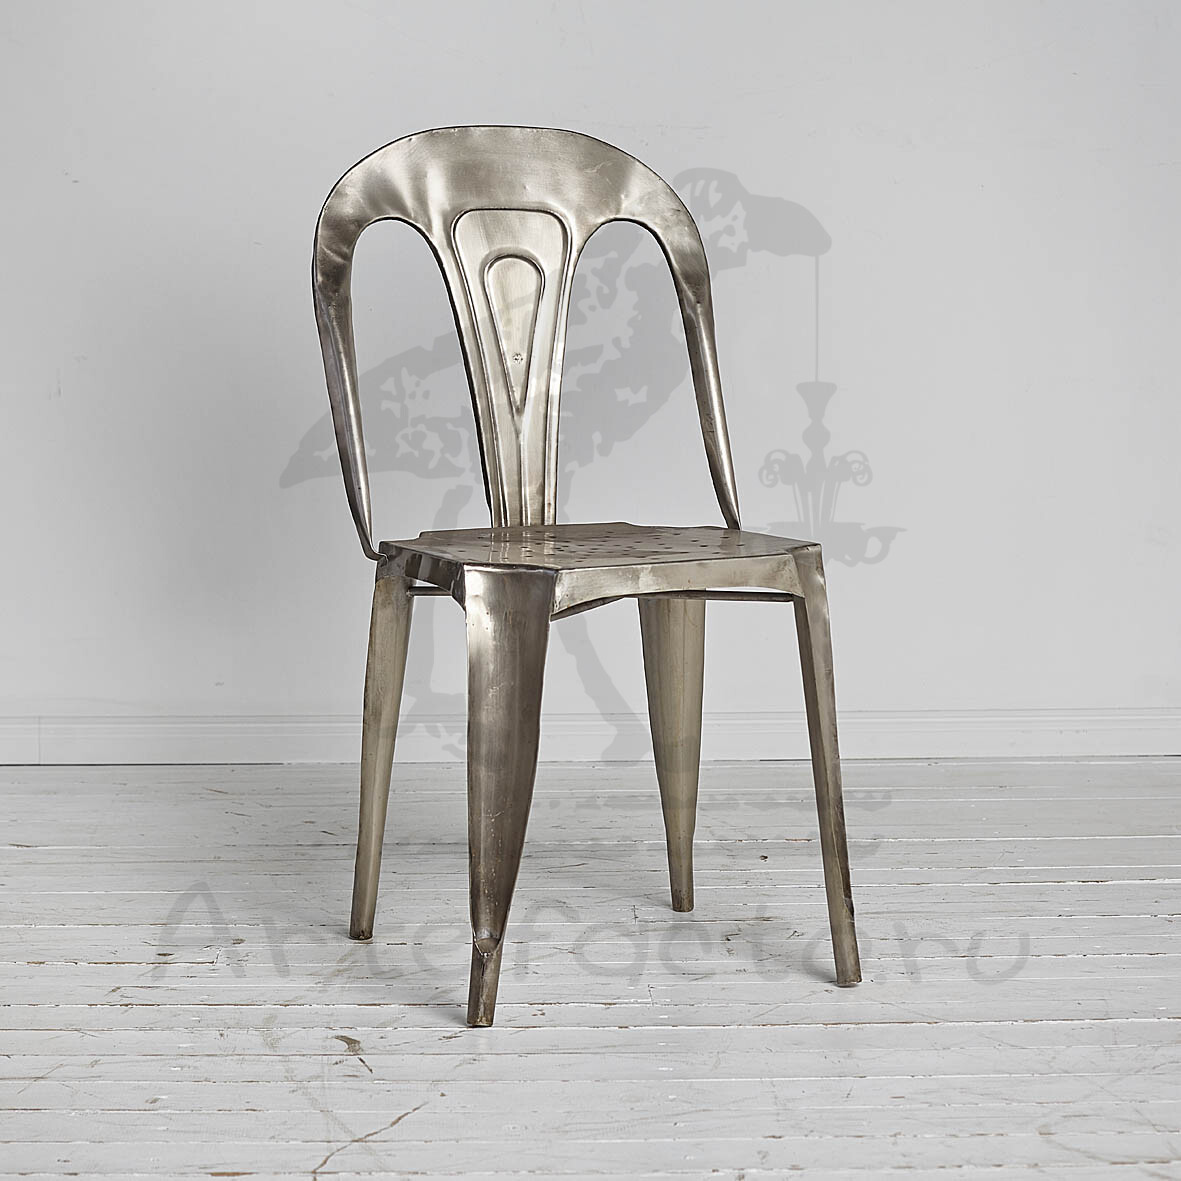 Металлический стул в стиле лофт